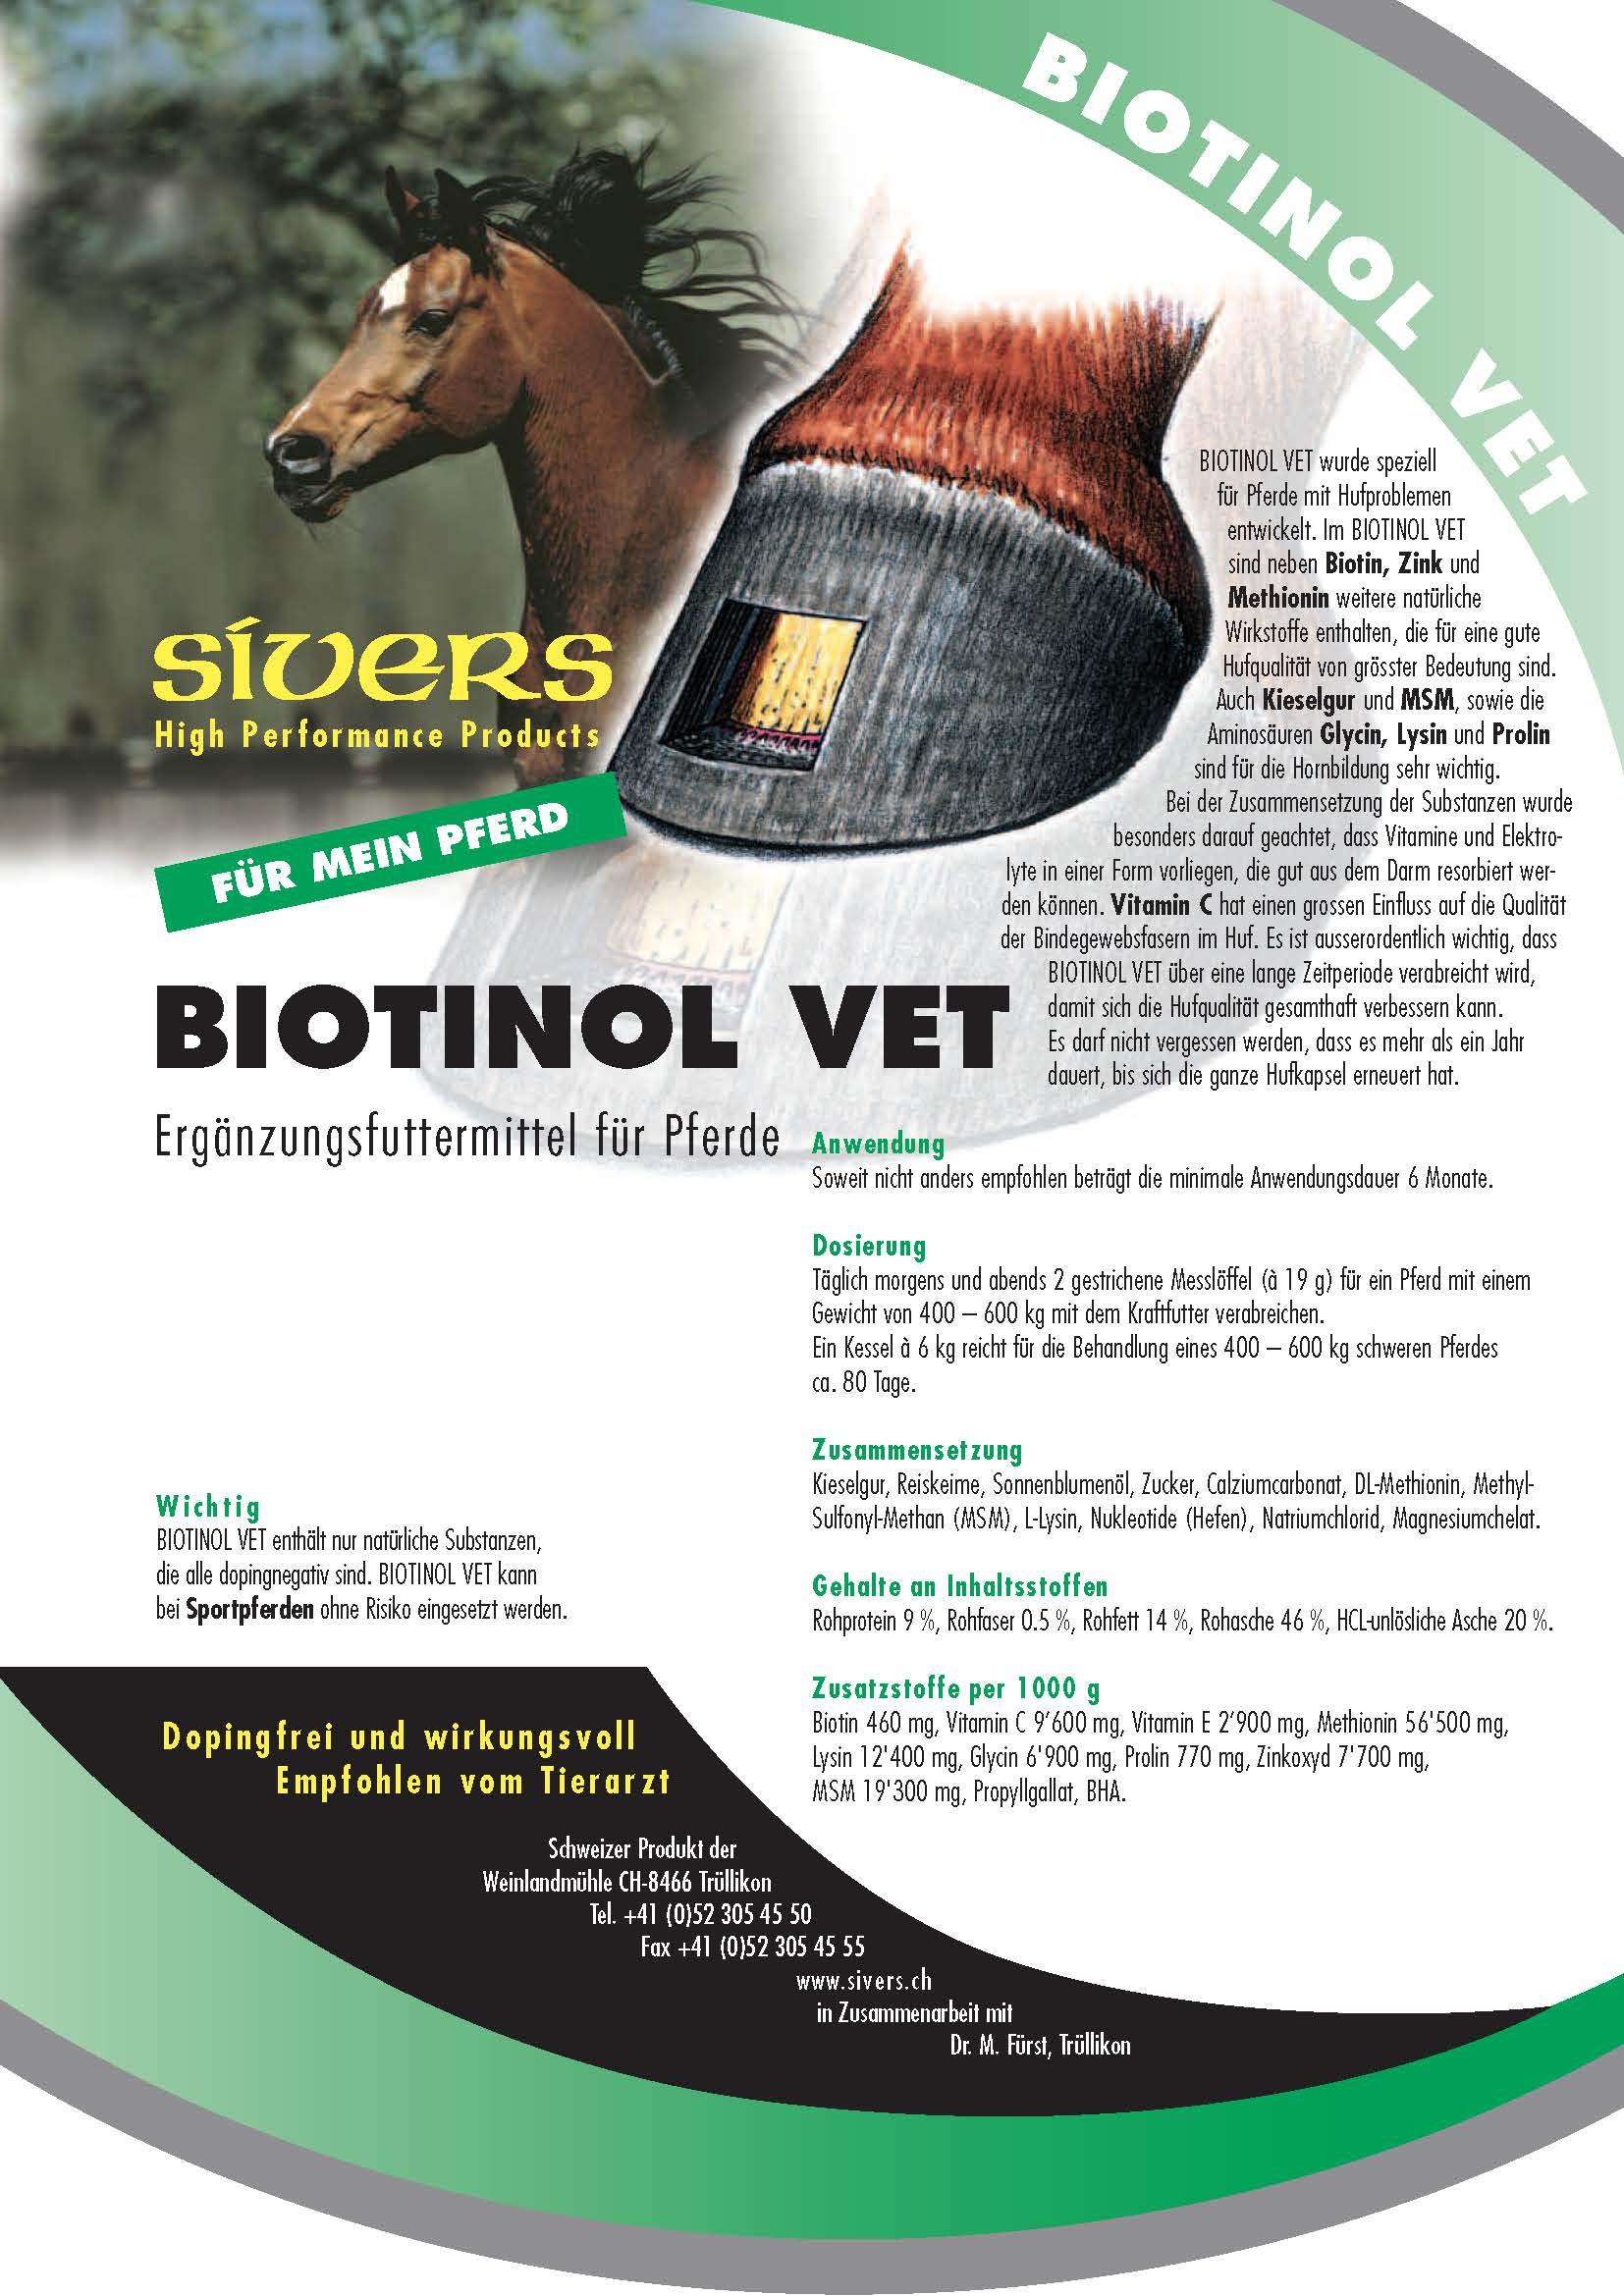 Biotinol Vet - Sivers - Darreichungsform:Pulver, Ergänzungsfuttermittel:Huf, Hersteller:Sivers, Tierart:Pferd - Marigin AG Onlineshop für Tierbedarf